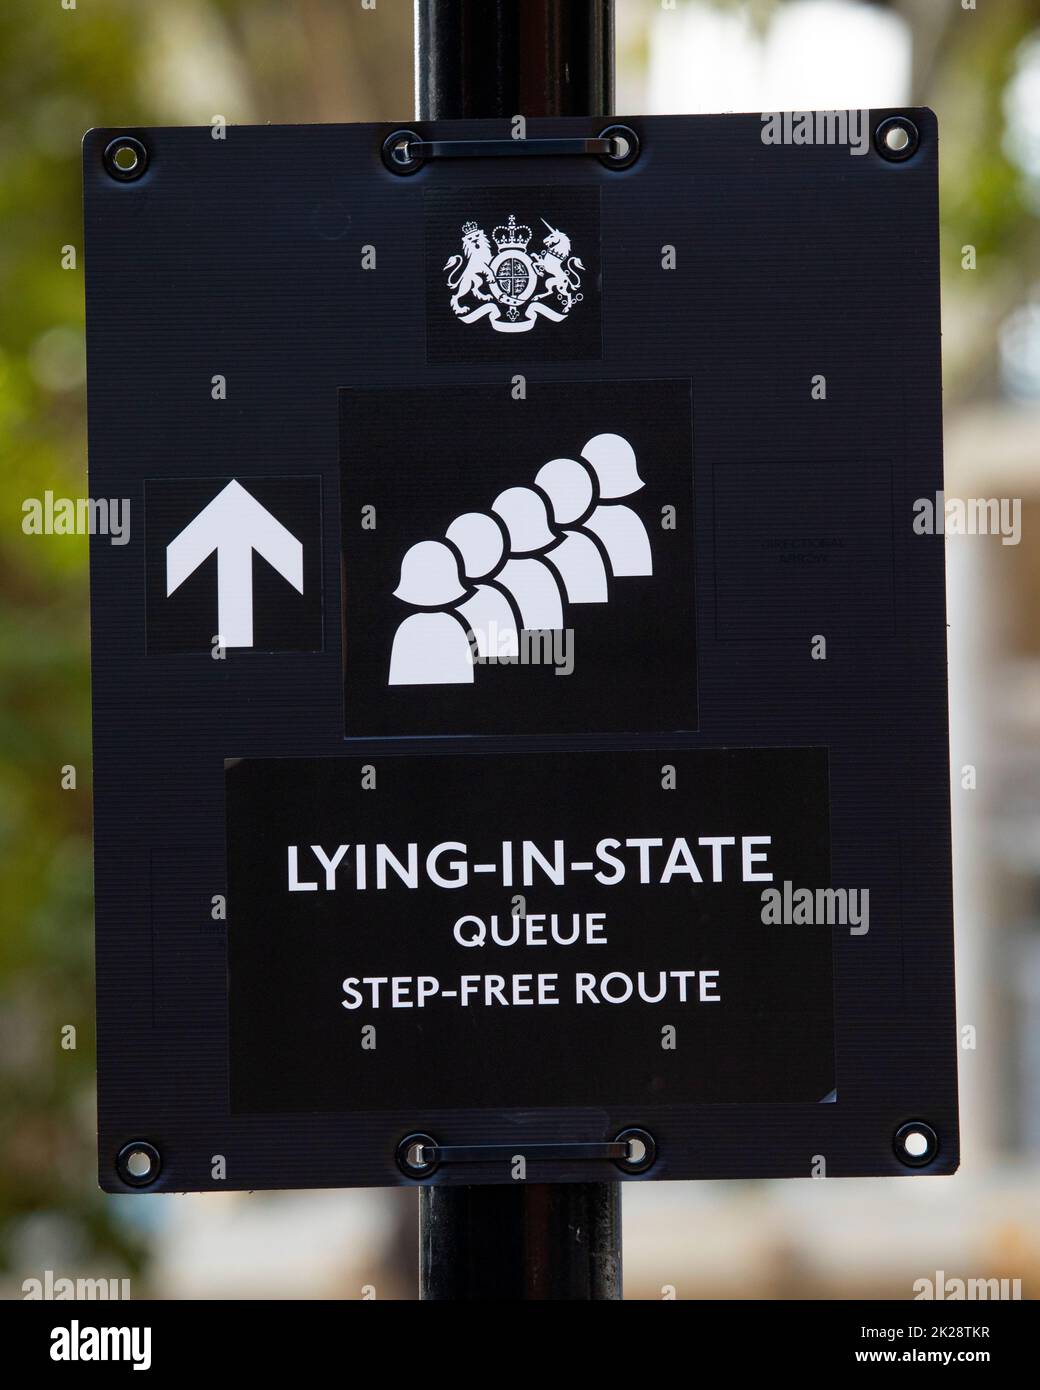 Londra, Regno Unito - Settembre 14th 2022: Un segno che mostra la direzione per il pubblico che desidera fare la coda per sua Maestà la Regina Elisabetta II Lying-in-state a W Foto Stock